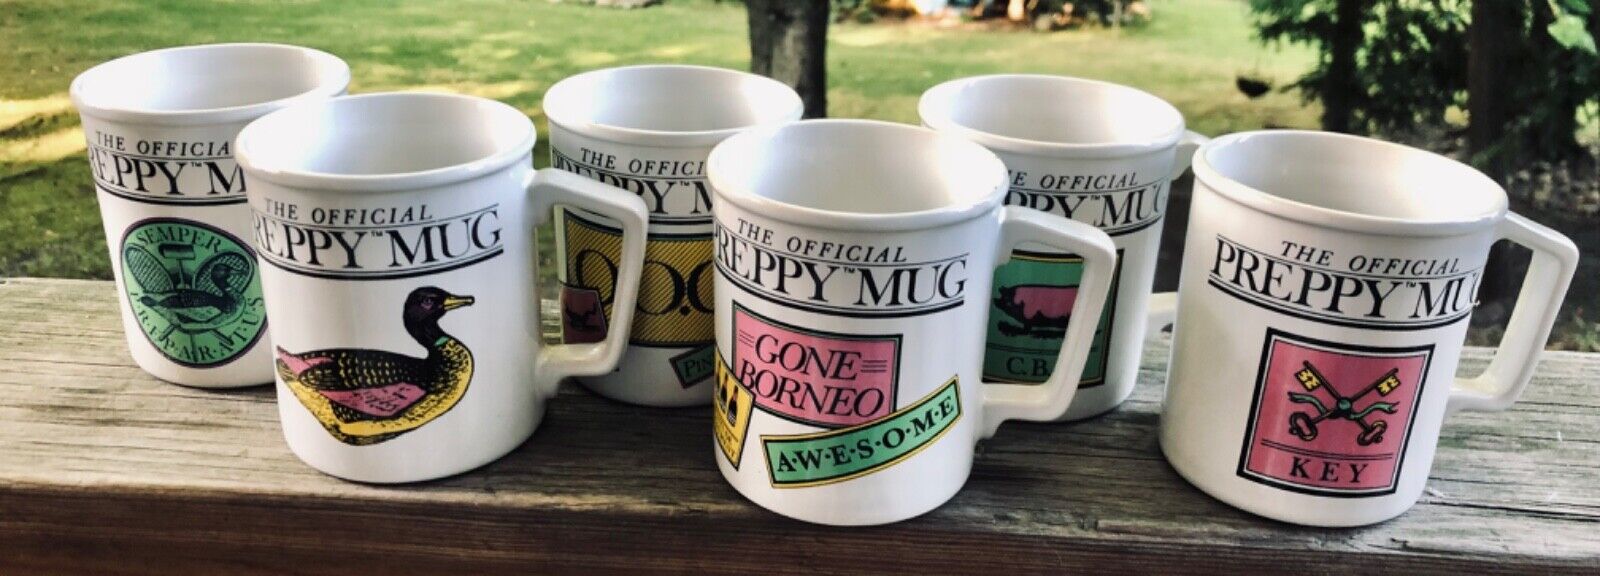 Set of 6 The Original Preppy Mug Mugs W/ Box